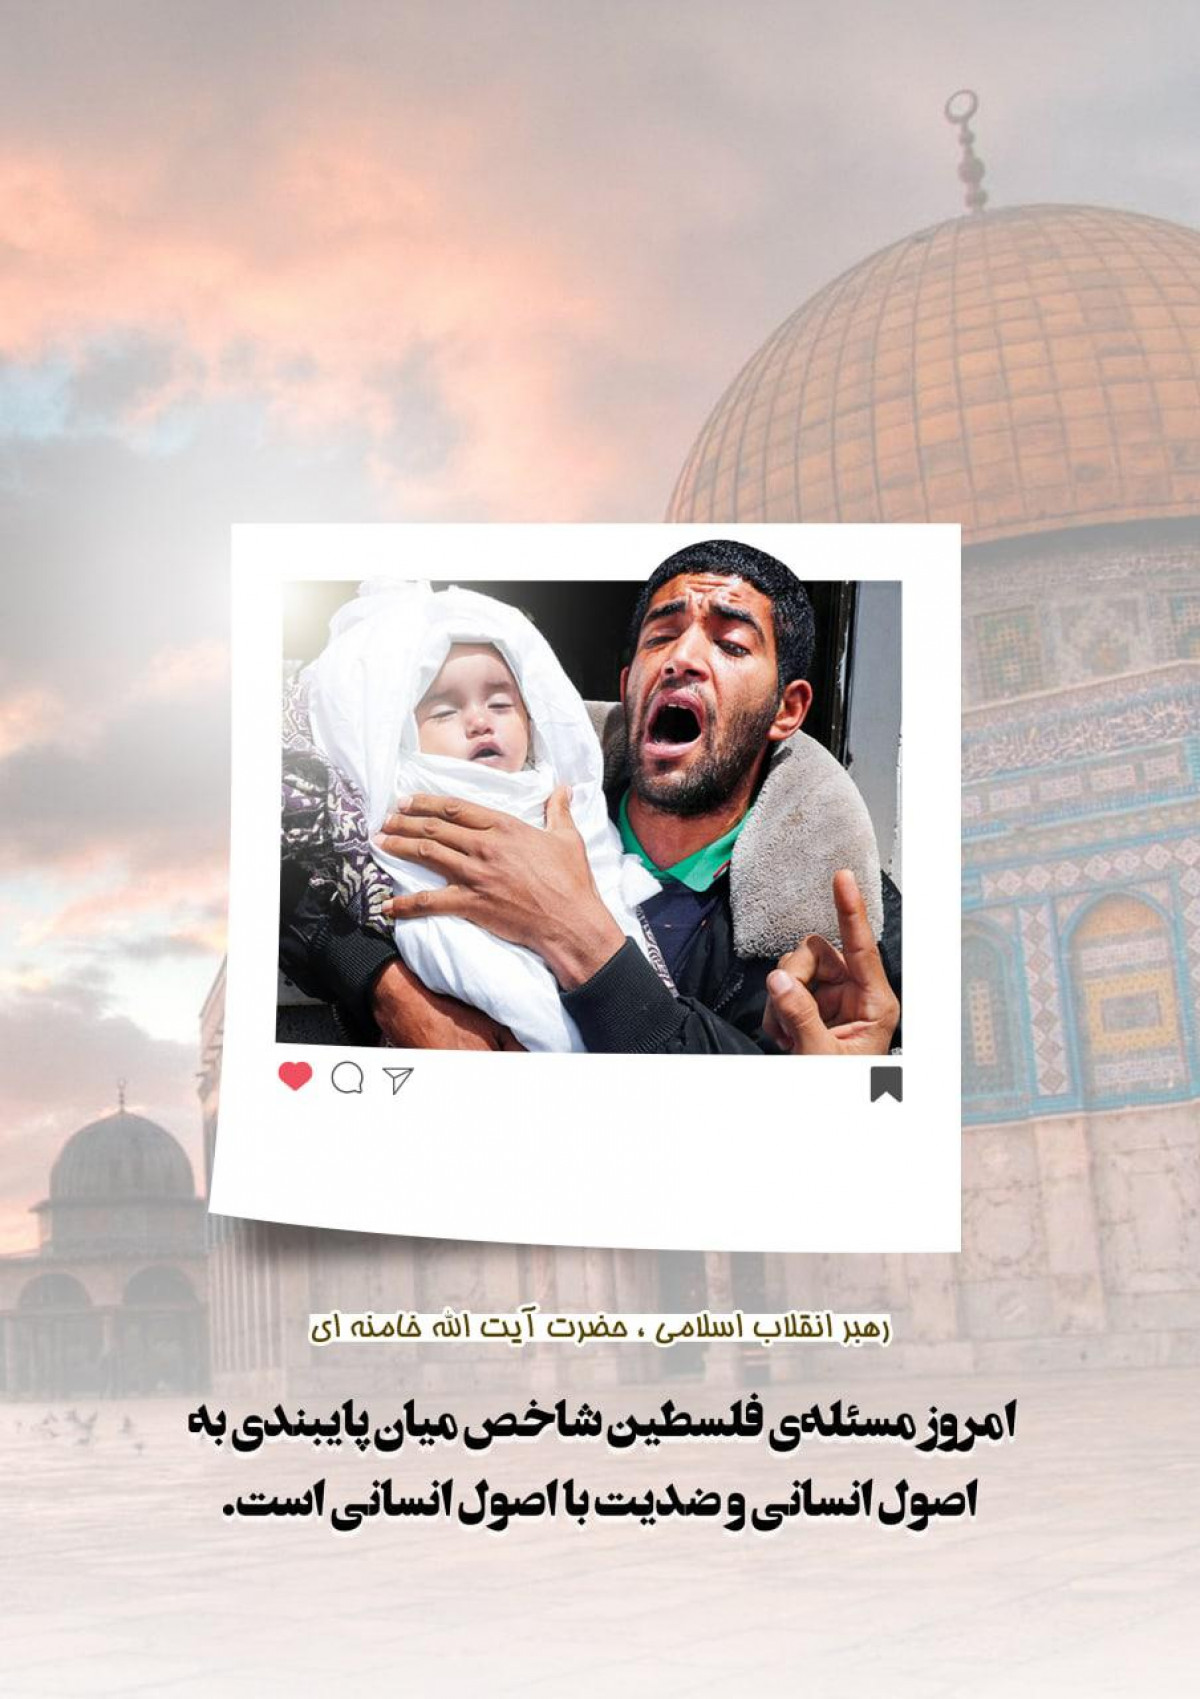 پوستر : امروز مسئله ی فلسطین شاخص میان پایبندی به اصول